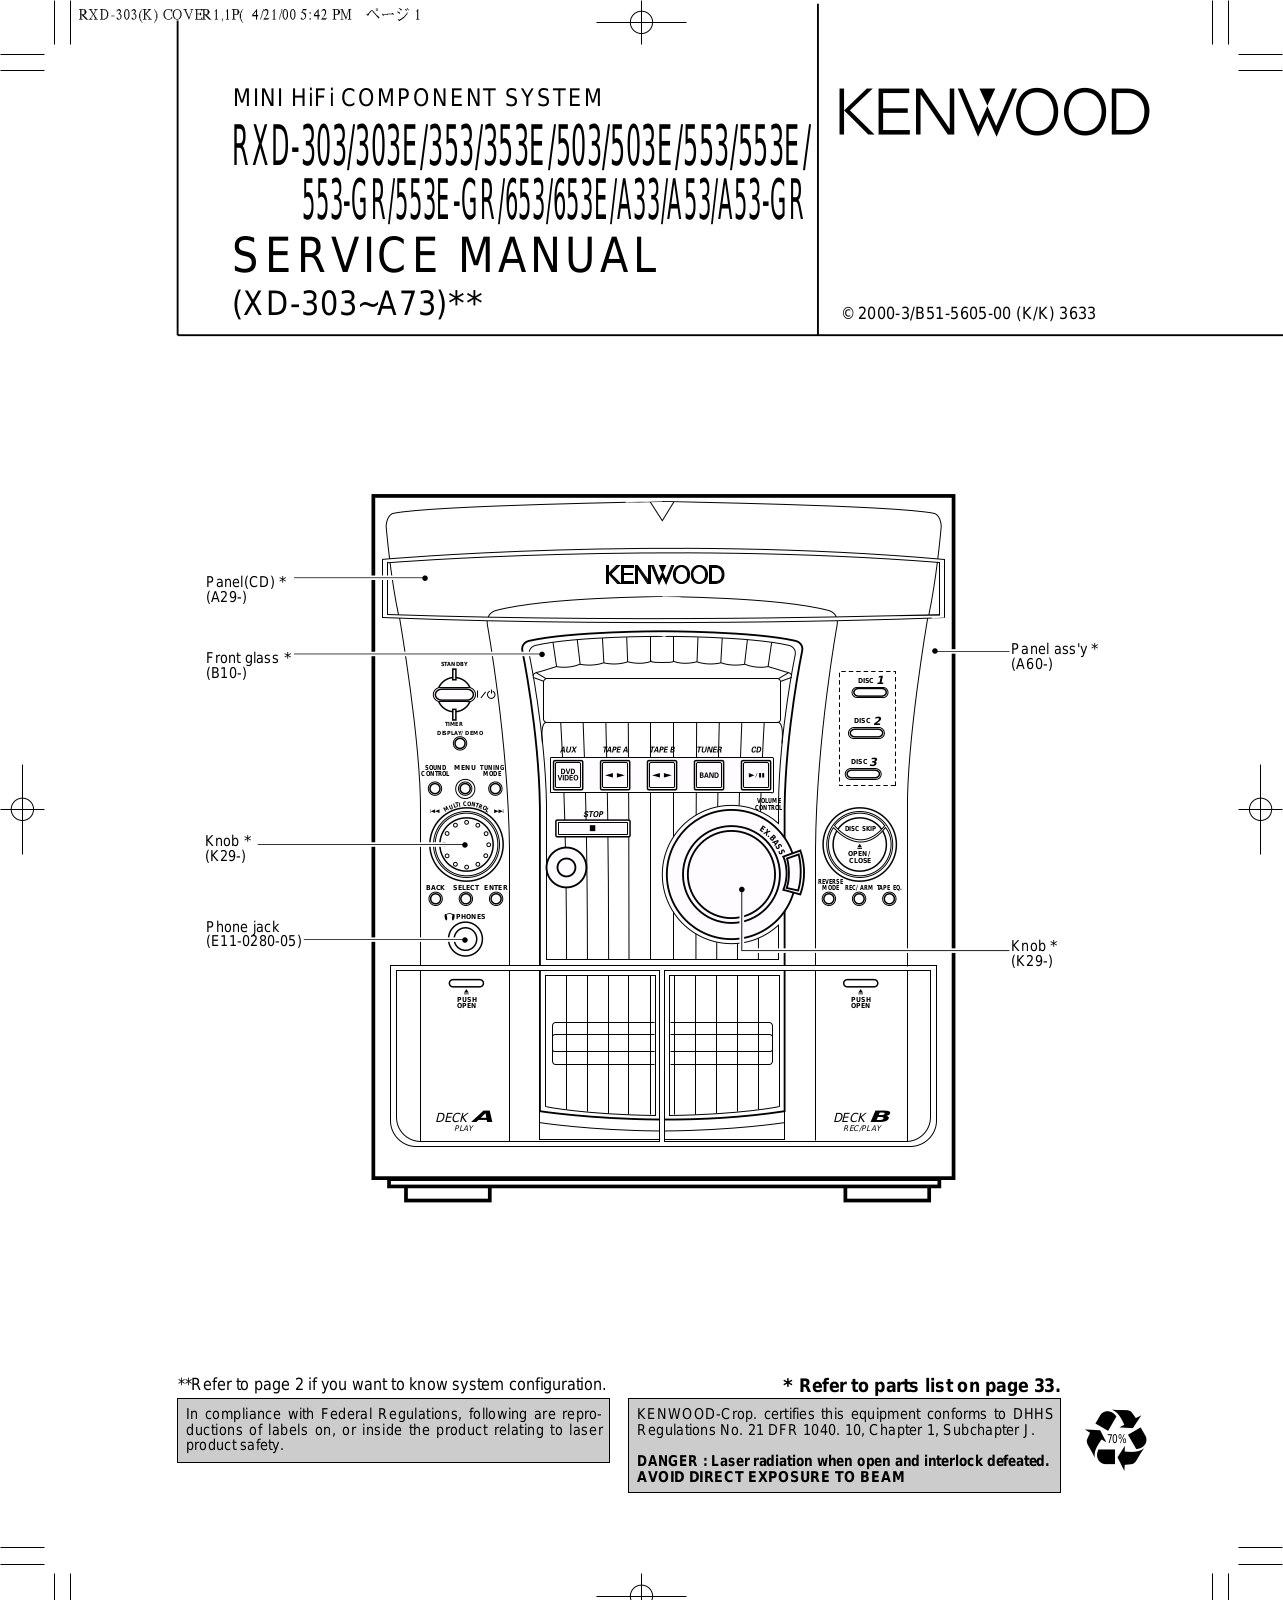 Kenwood RXD-503, RXD-553, RXD-653, RXDA-33, RXDA-53 Service manual